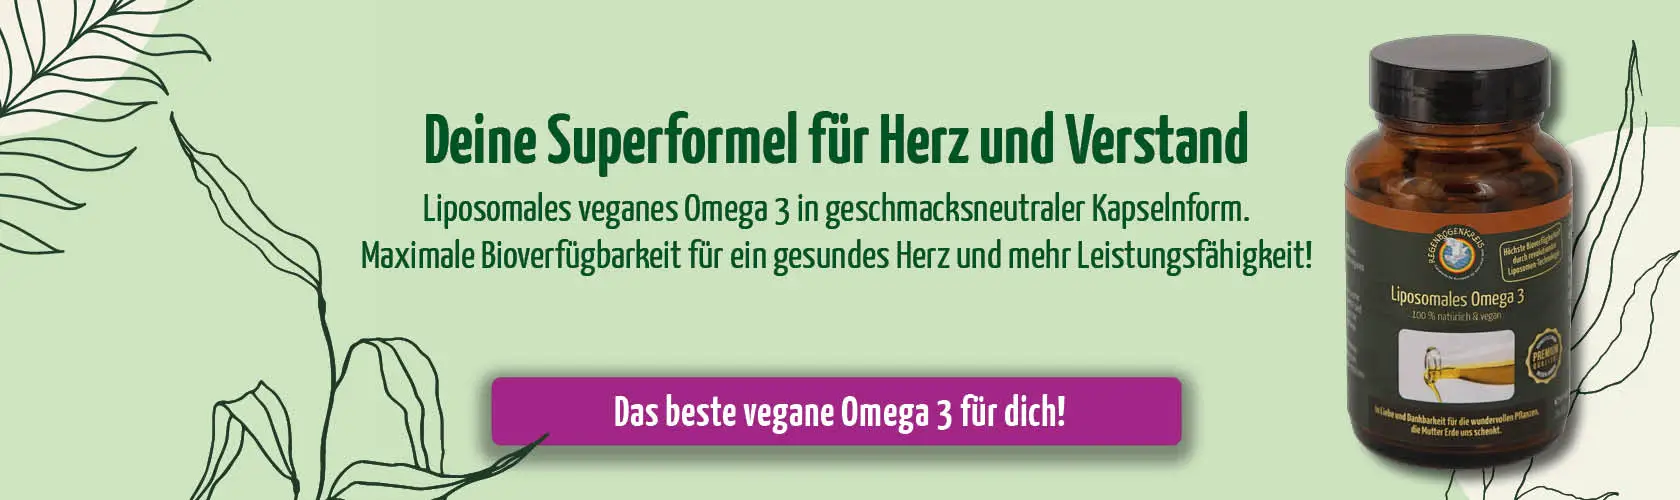 https://www.regenbogenkreis.de/liposomales-omega-3-60-kapseln/